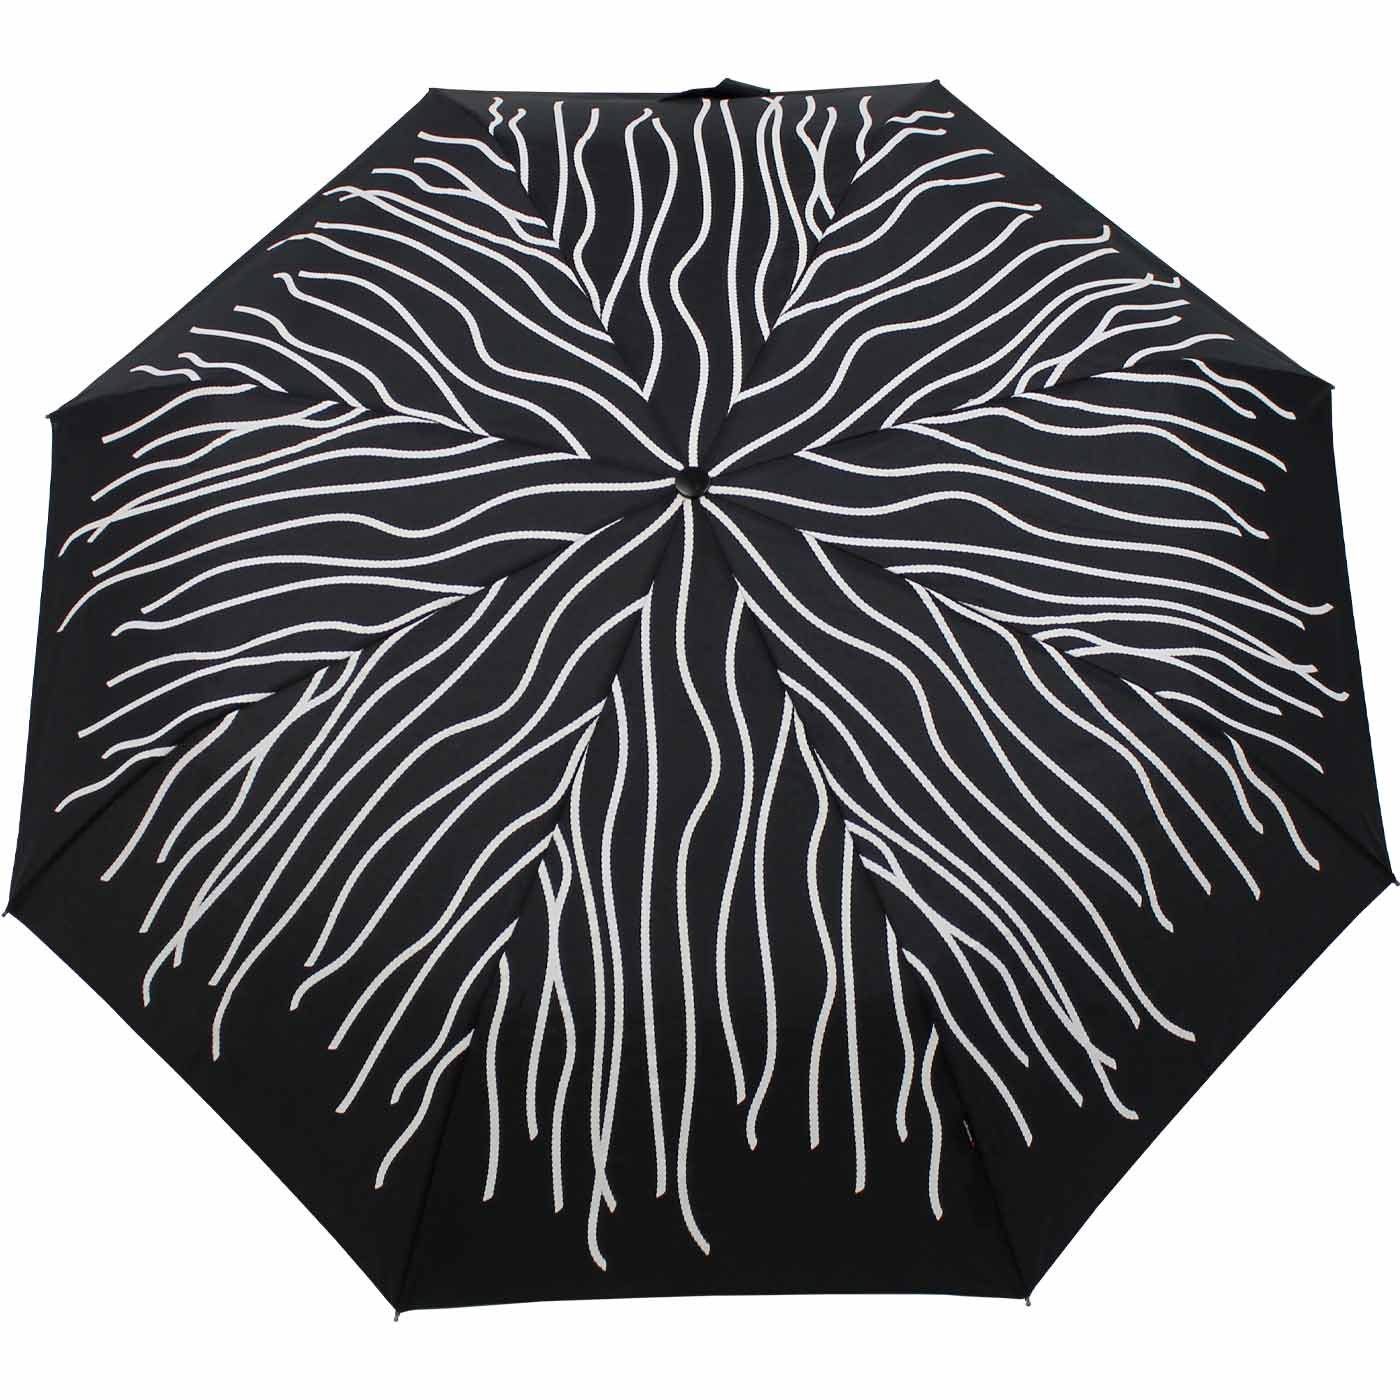 Knirps® Langregenschirm Large Fäden Farbwechsel schwarz Rope, Nässe Duomatic sich bei - färben weißen mit Wet Print bunt die